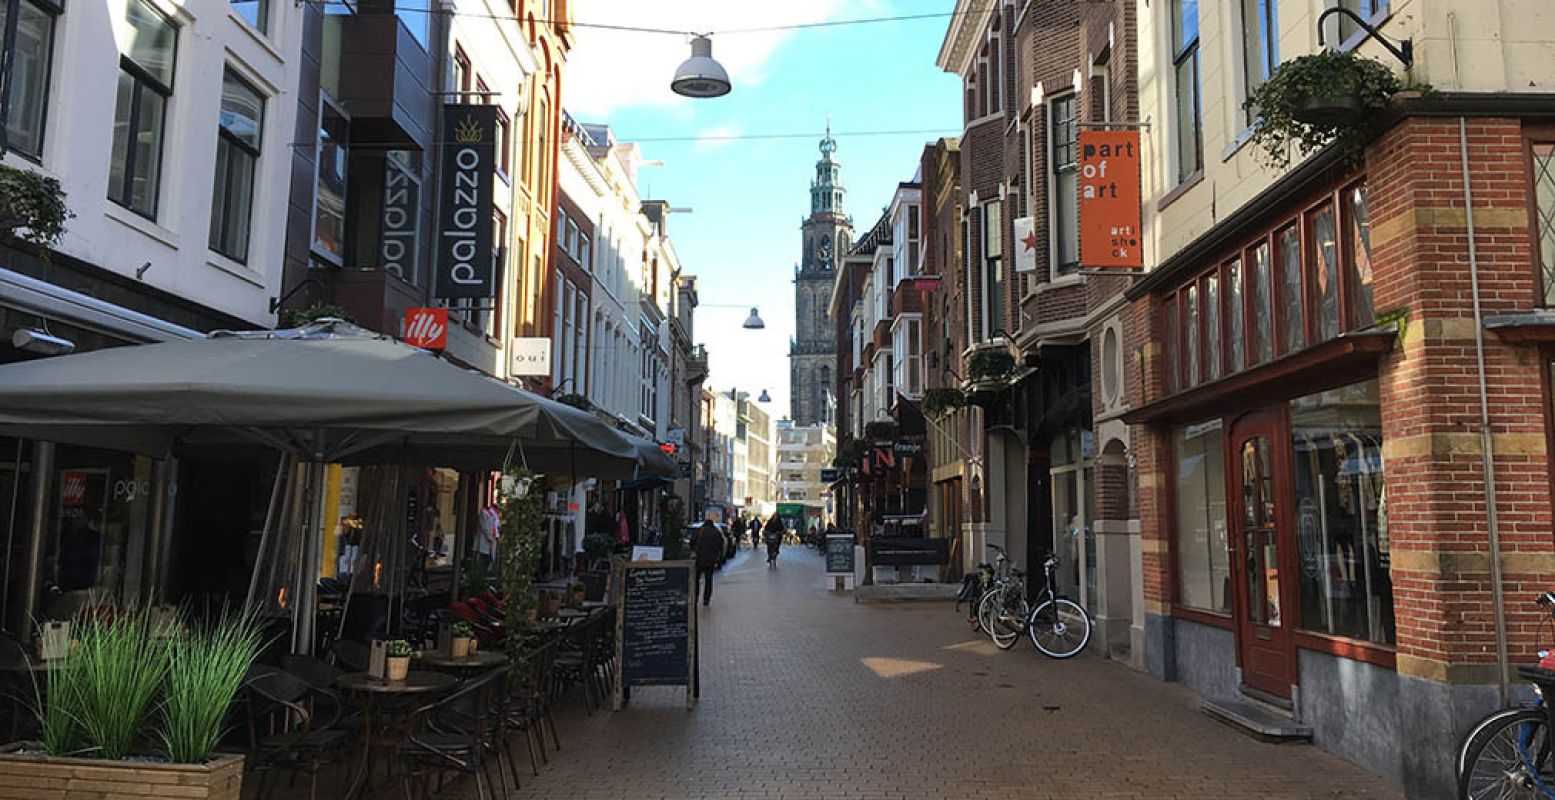 De Zwanestraat - Kromme Elleboog in Groningen is de leukste winkelstraat van 2016. Foto: De Kaaskop, Erik Vos.